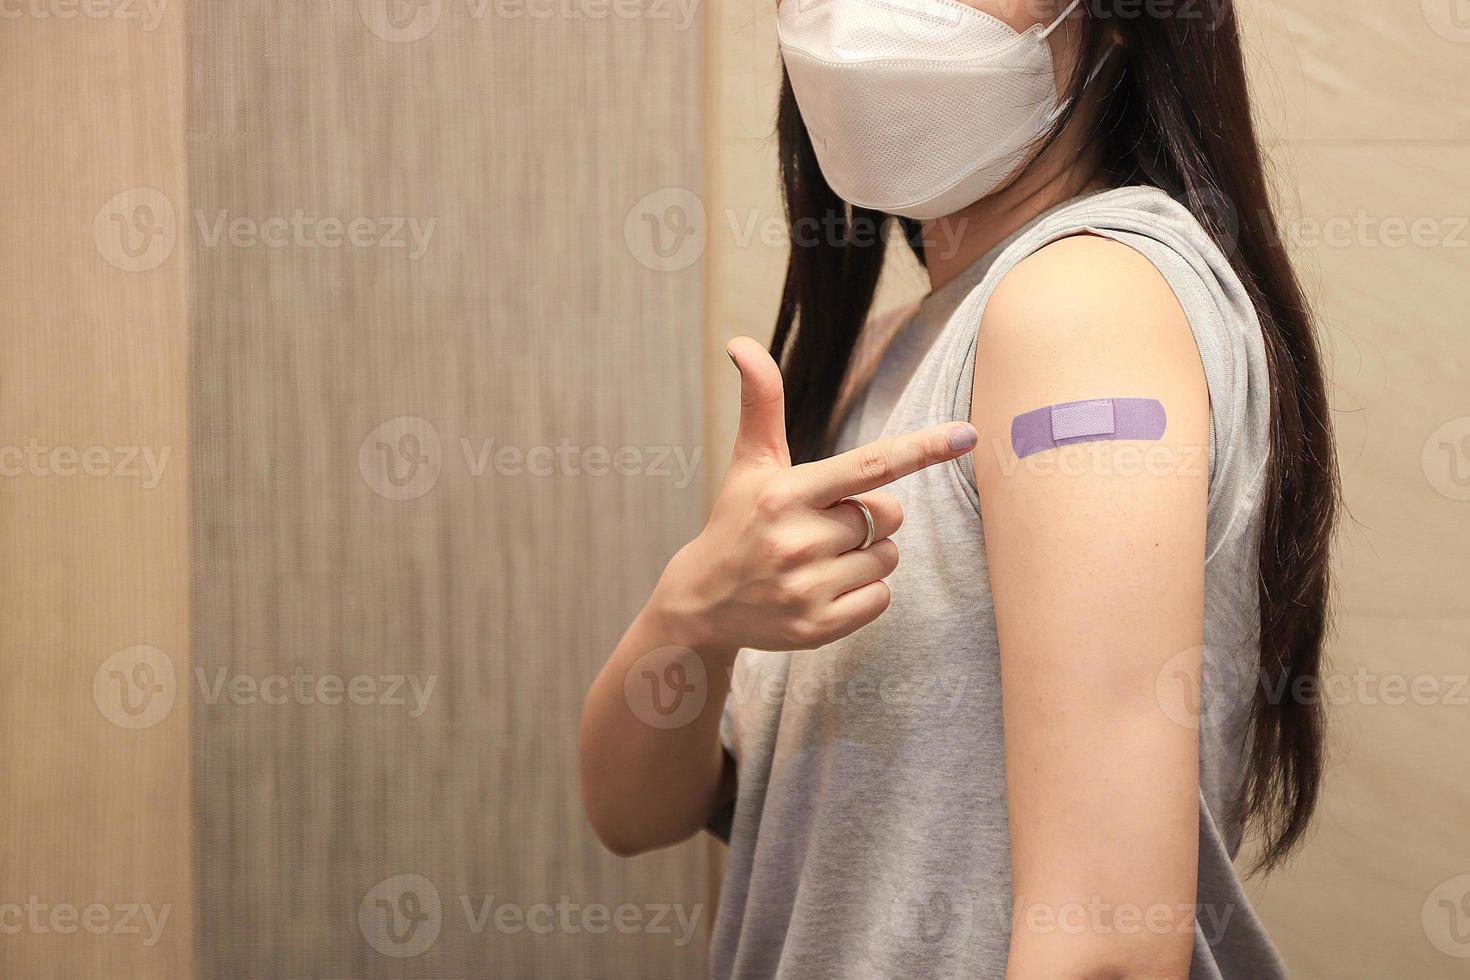 Gesundes asiatisches Frauenkonzept der empfohlenen Impfung, Frau, die ihren Hemdärmel herunterhält und ihren Arm mit Verband zeigt, nachdem sie die Impfung erhalten hat. foto